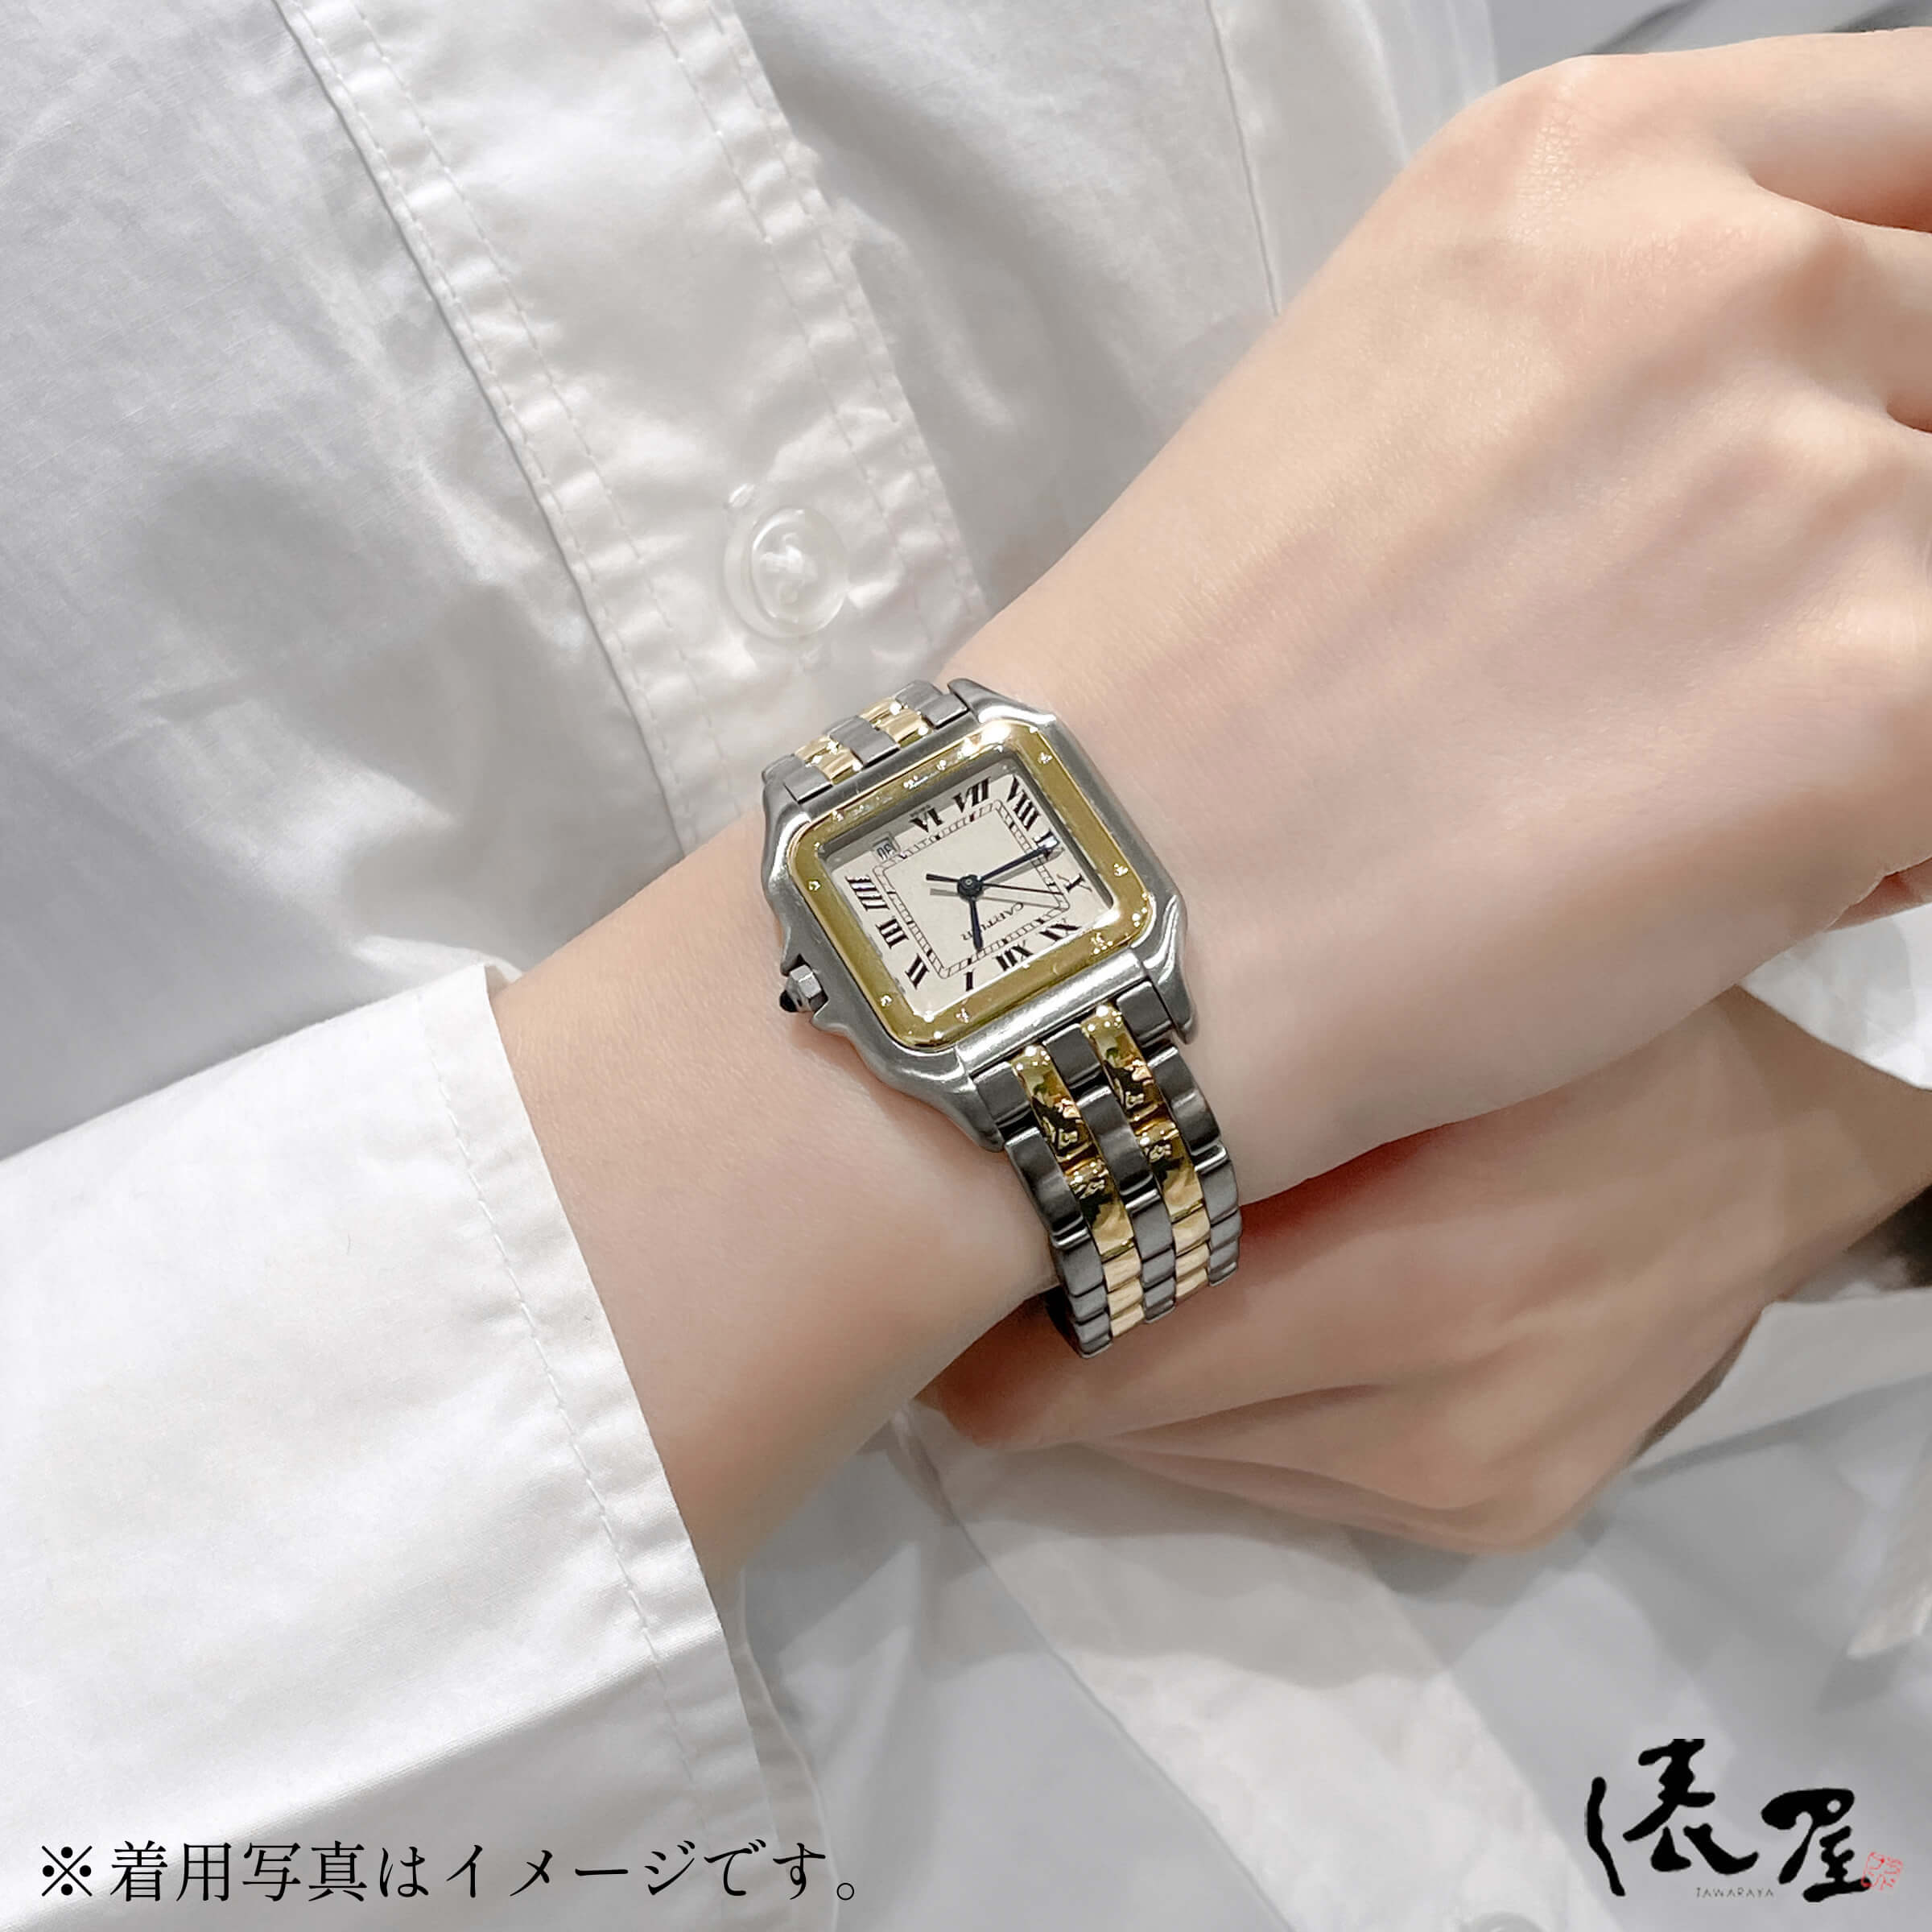 【極美品】 カルティエ パンテール MM 2ROW K18×SS 【オーバーホール済】 ヴィンテージ 美品 ボーイズ レディース 腕時計 【送料無料】 Cartier Panthere 時計 中古